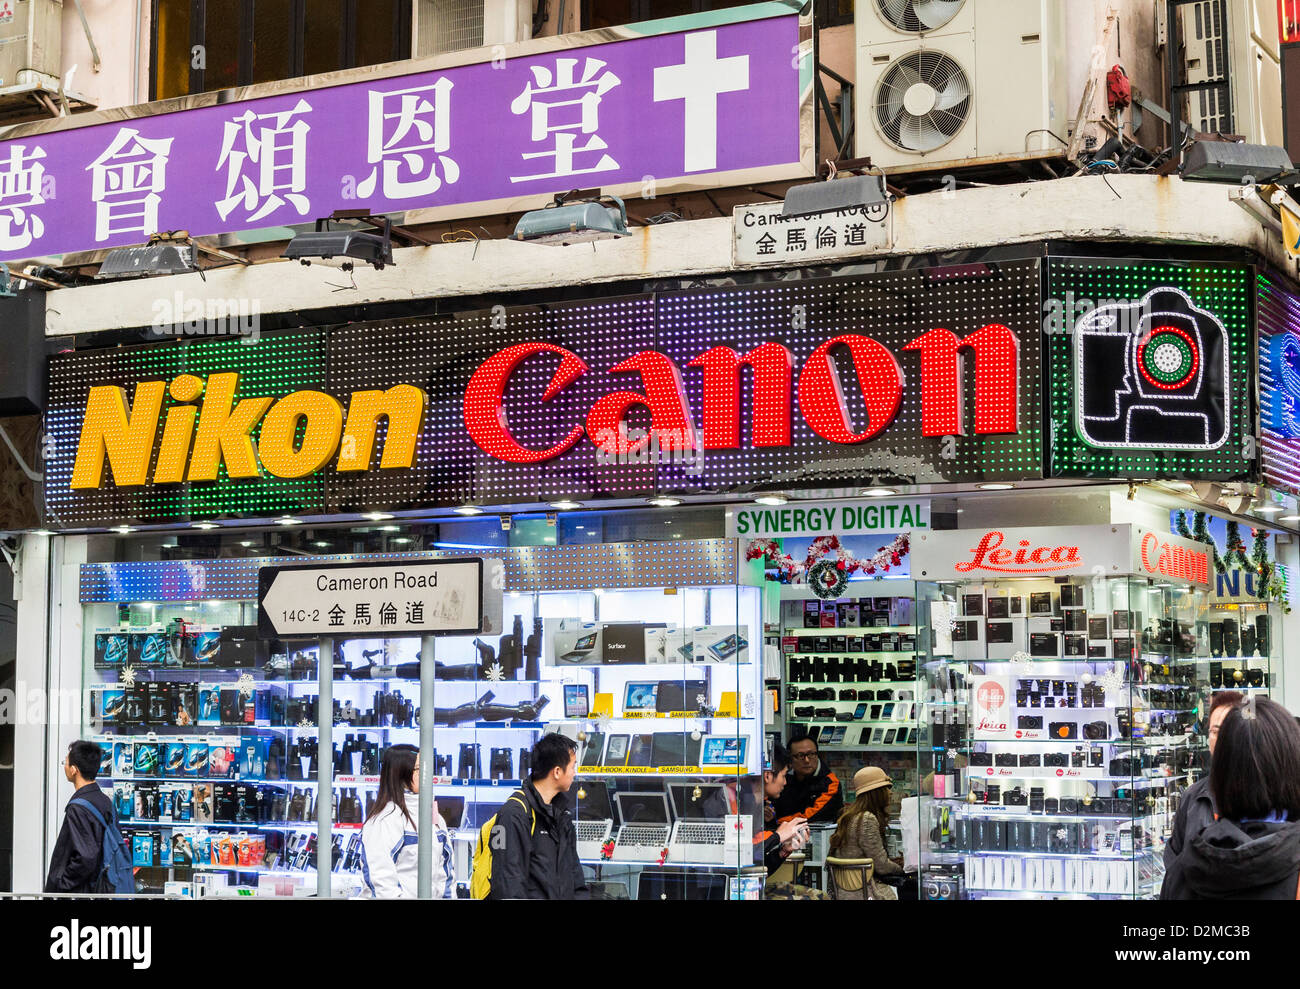 Fotogeschäft in Hong Kong mit alle Kamera und Zubehör Feld angezeigt  Stockfotografie - Alamy